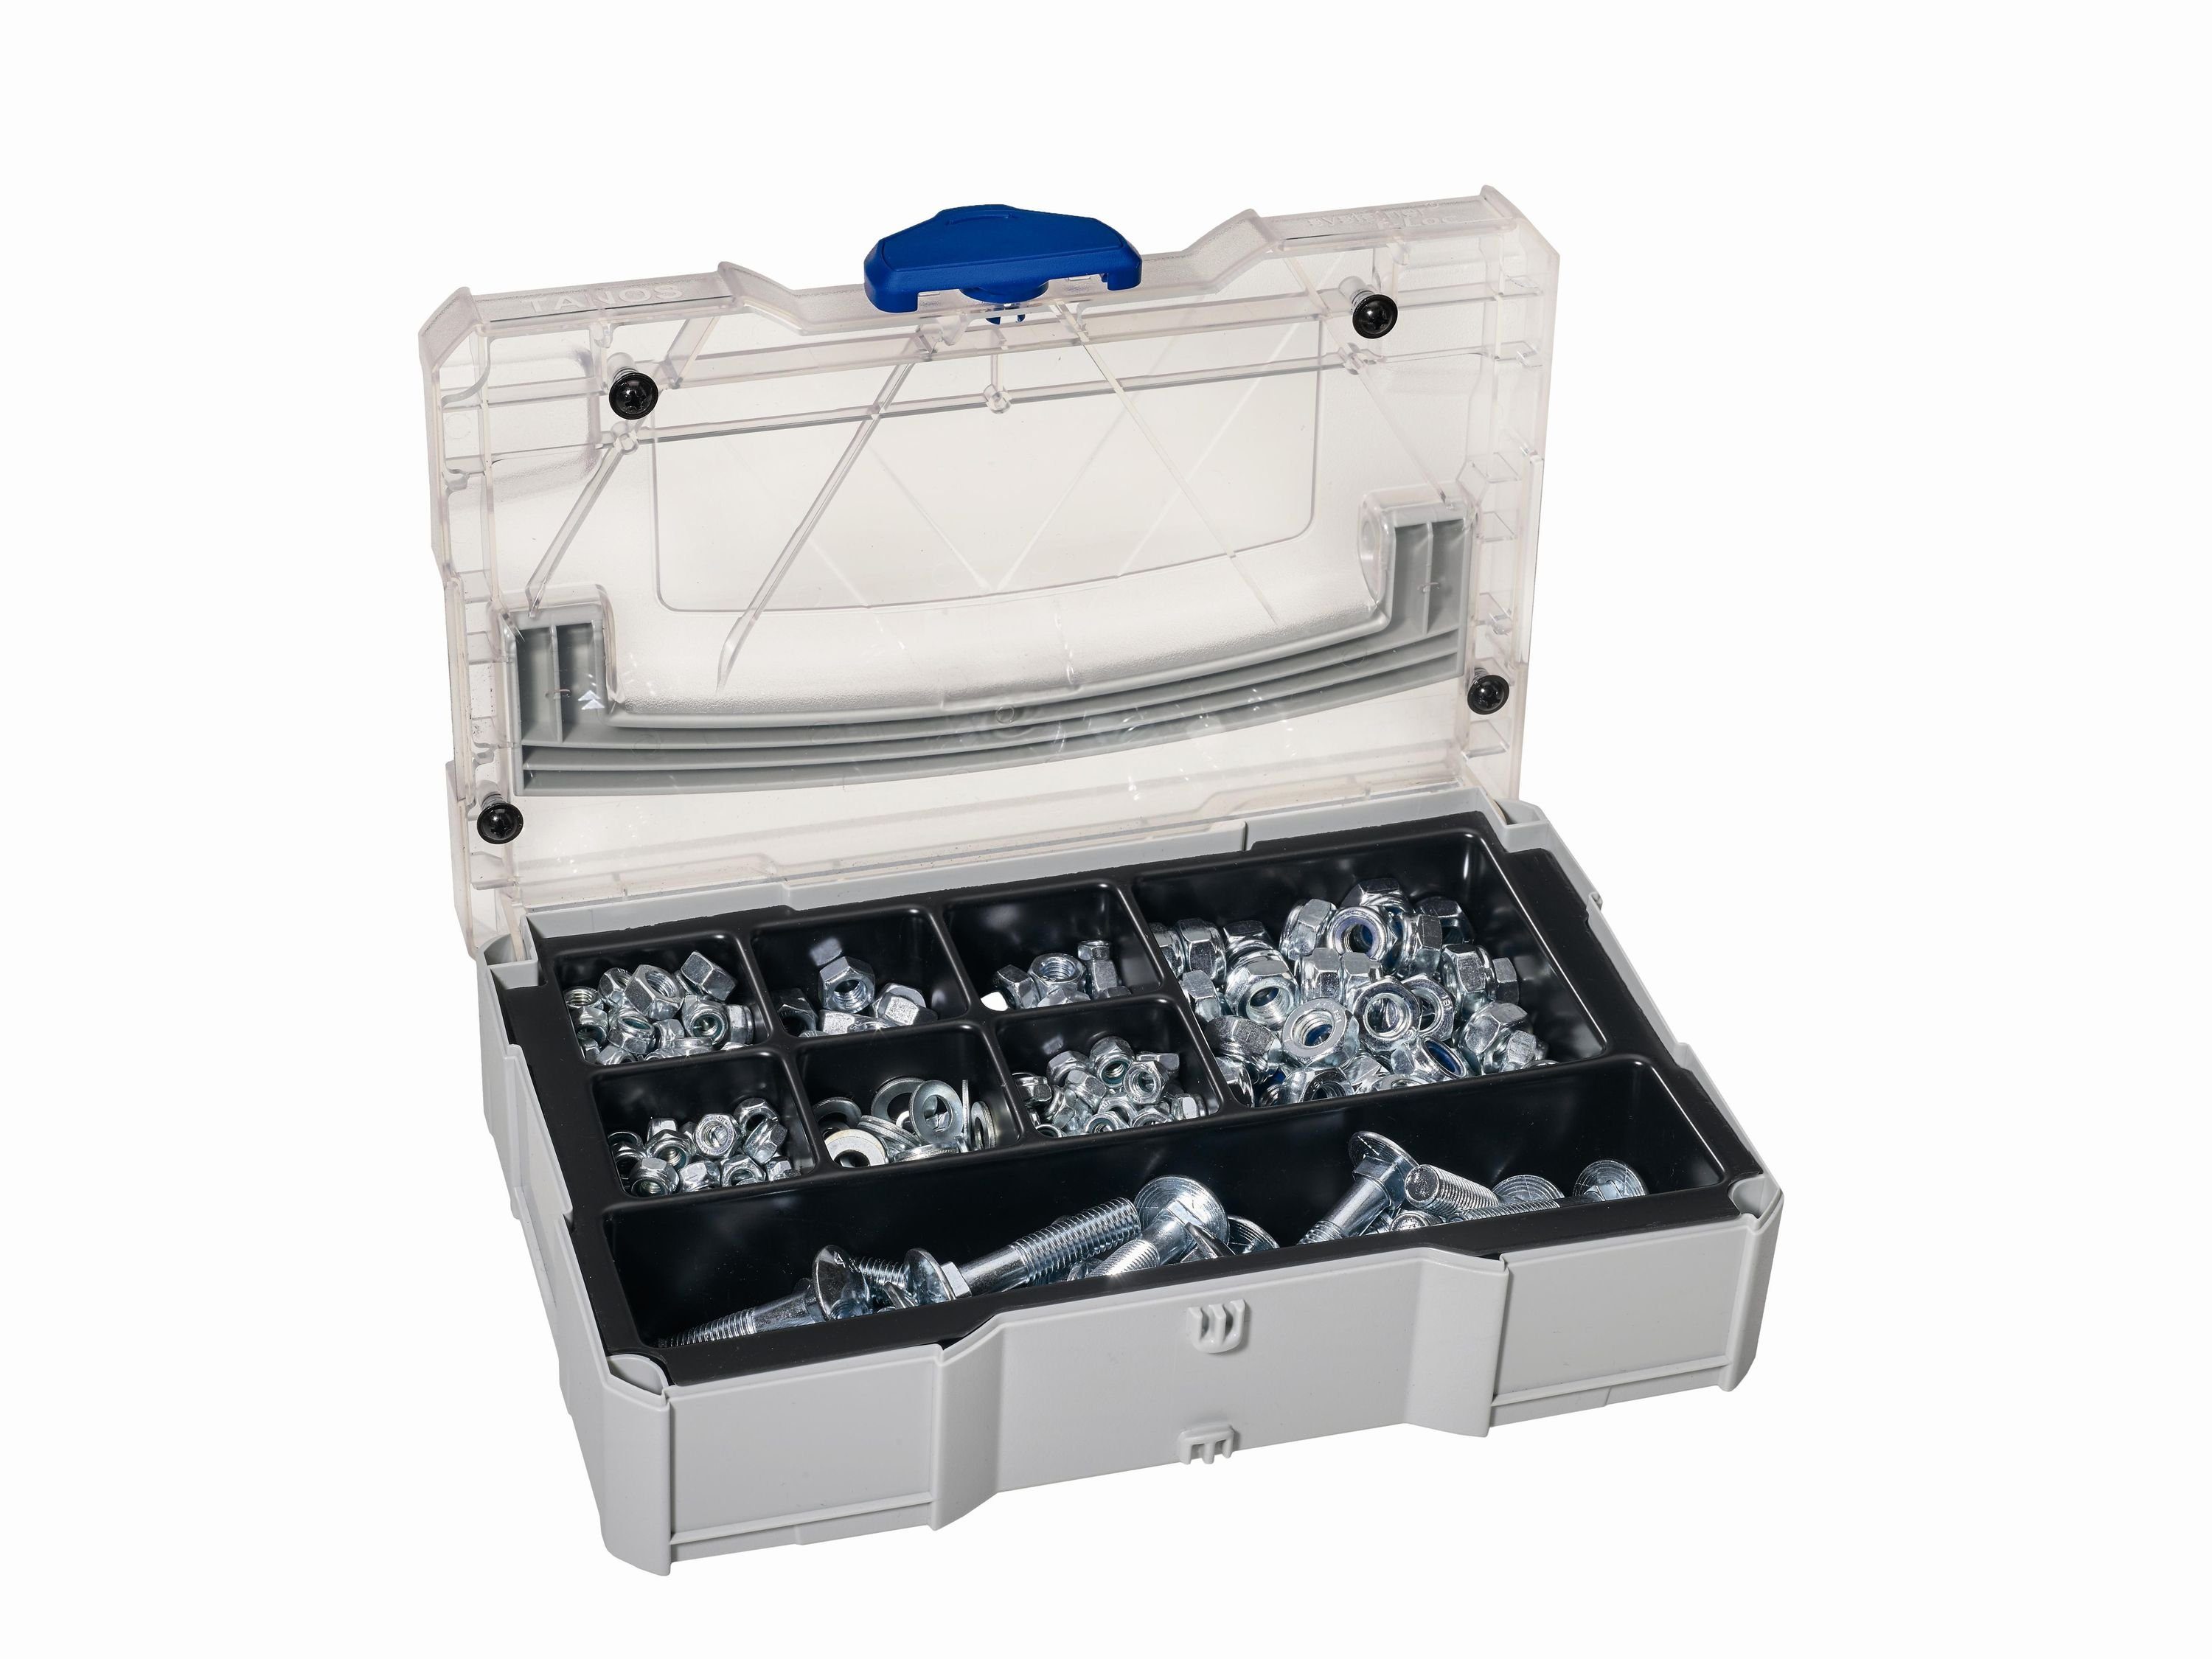 Tanos Werkzeugbox Universal MINI-systainer® T-Loc I mit transparentem Deckel, transparenter Abdeckung und Universaltiefziehteil 8-fach